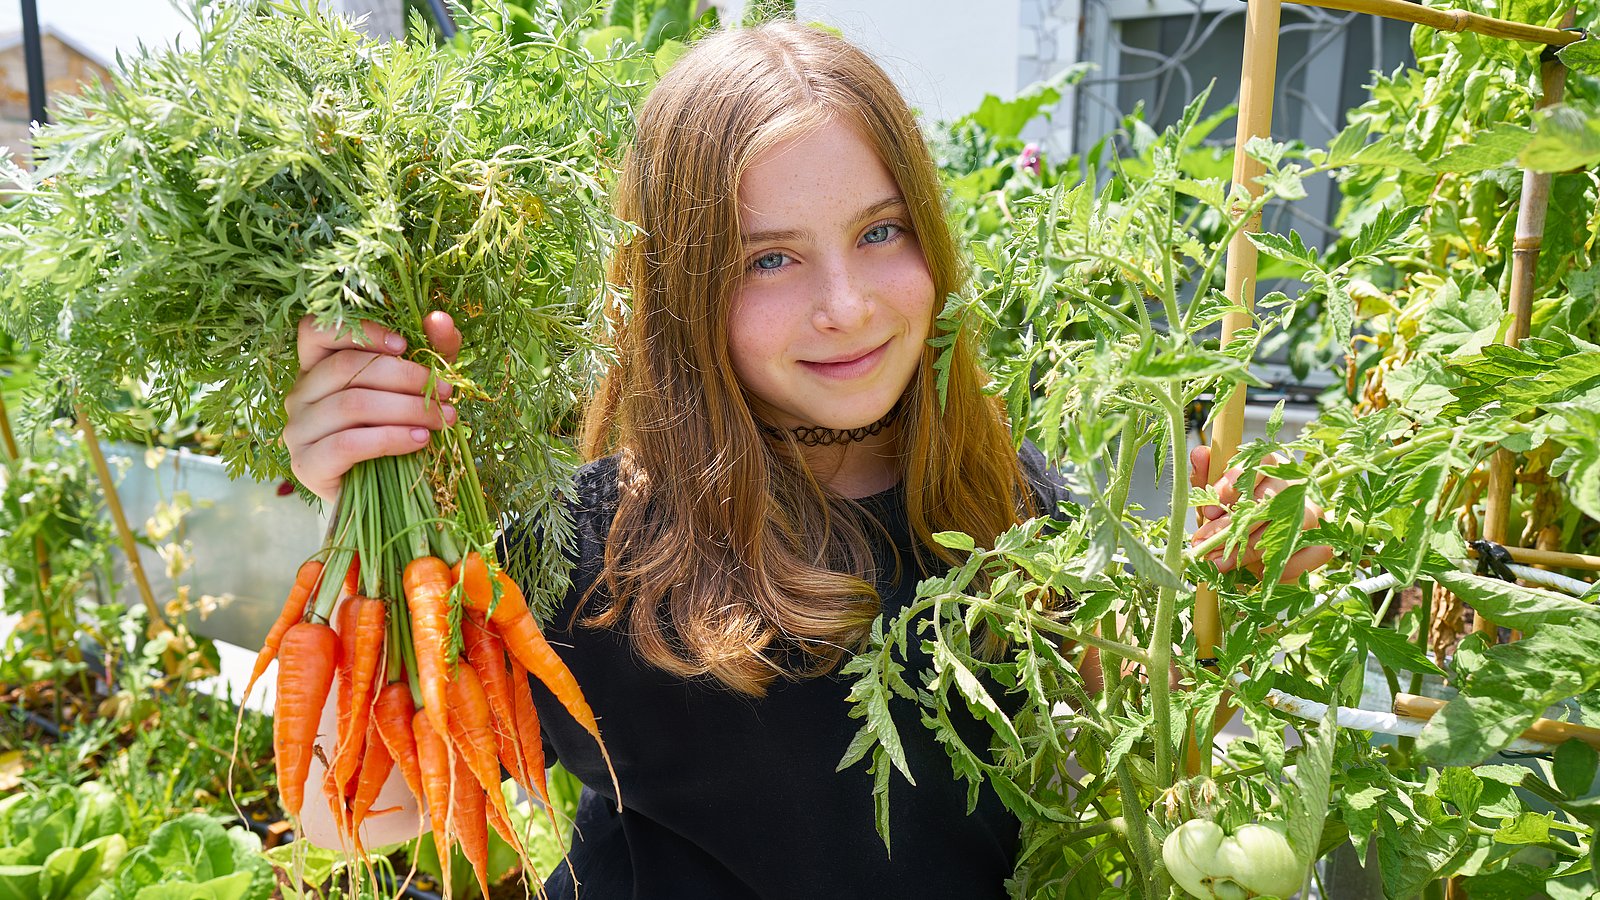 Ein jugendliches Schulmädchen mit langen glatten Haaren hält in einem Garten inmitten von Tomatenstauden einen Bund Möhren in der Hand. Sie trägt eine Kette sehr hoch am Hals.